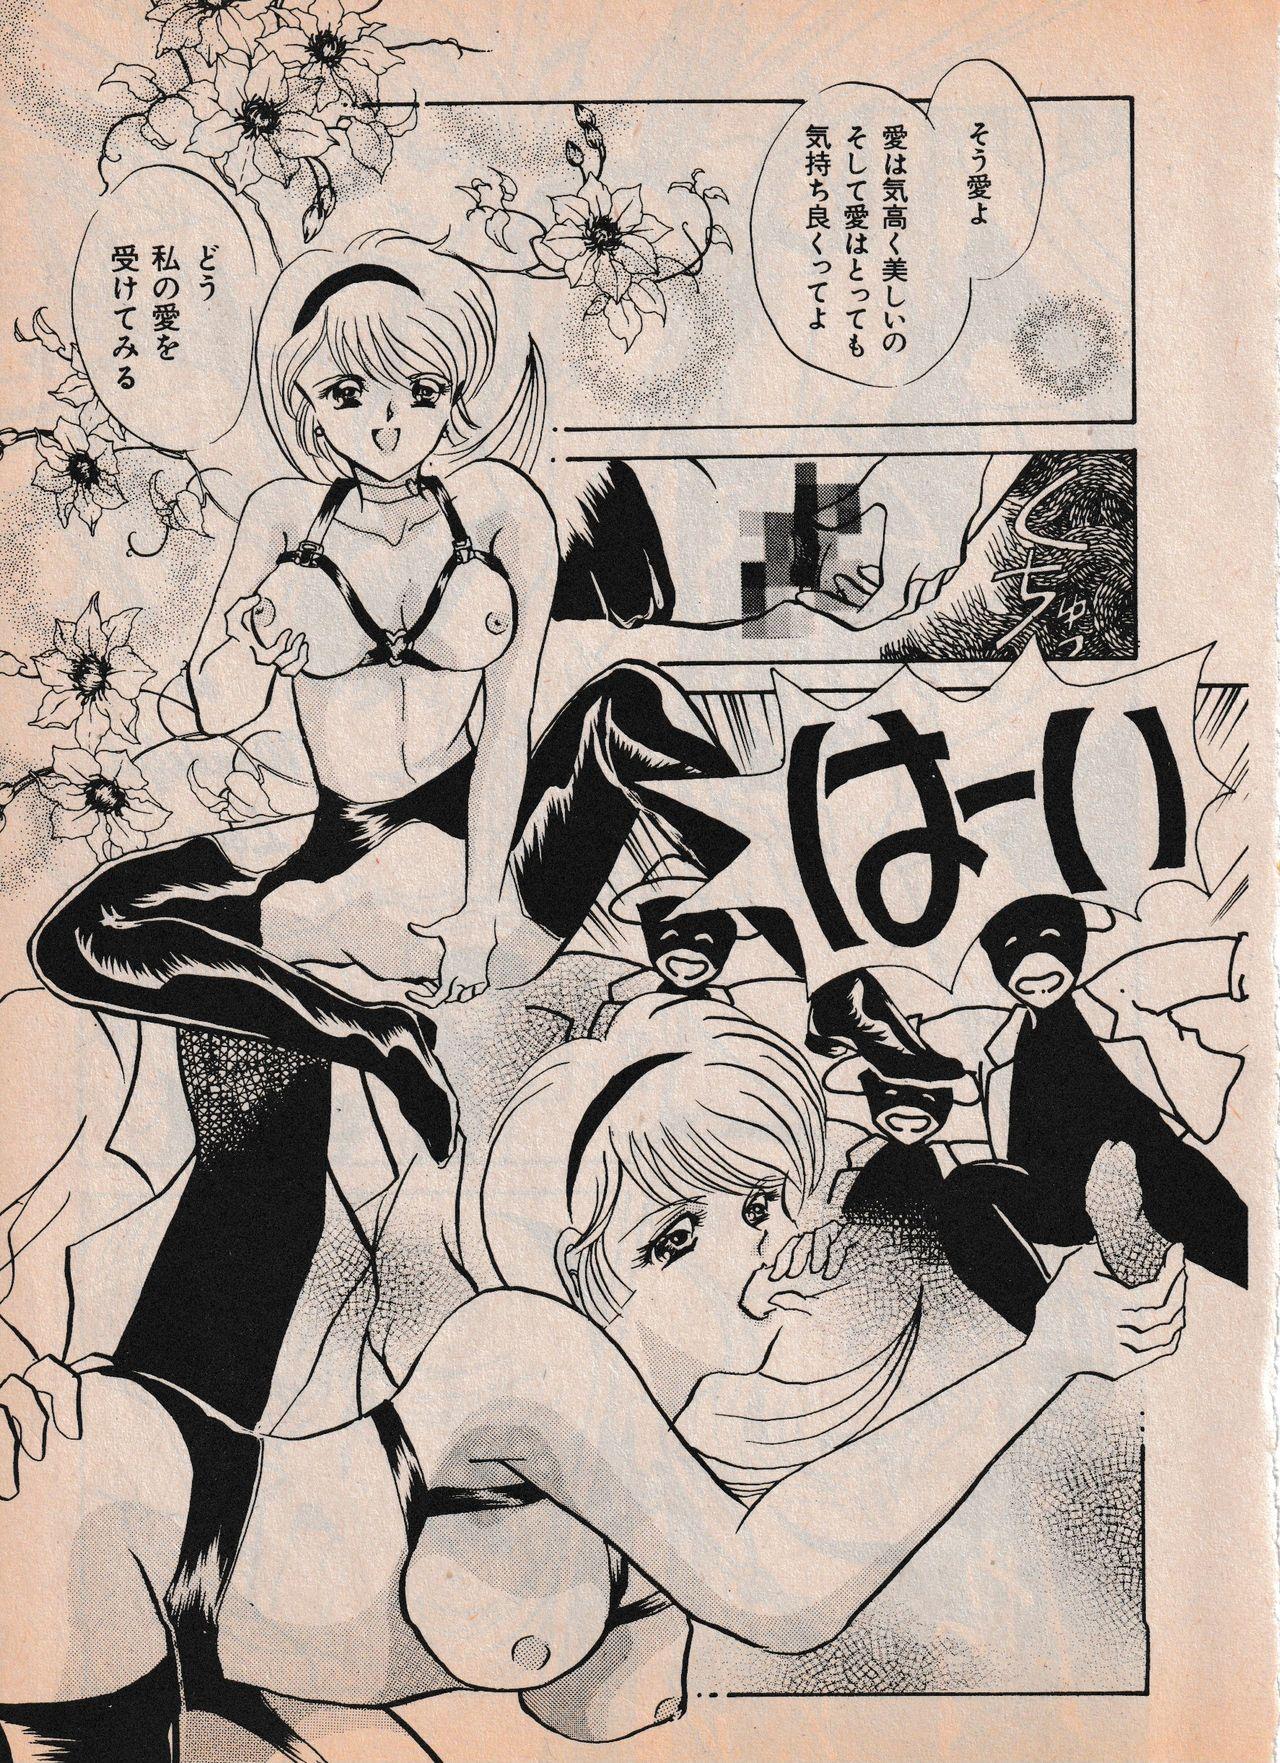 Sailor X vol. 4 - Sailor X vs. Cunty Horny! 73